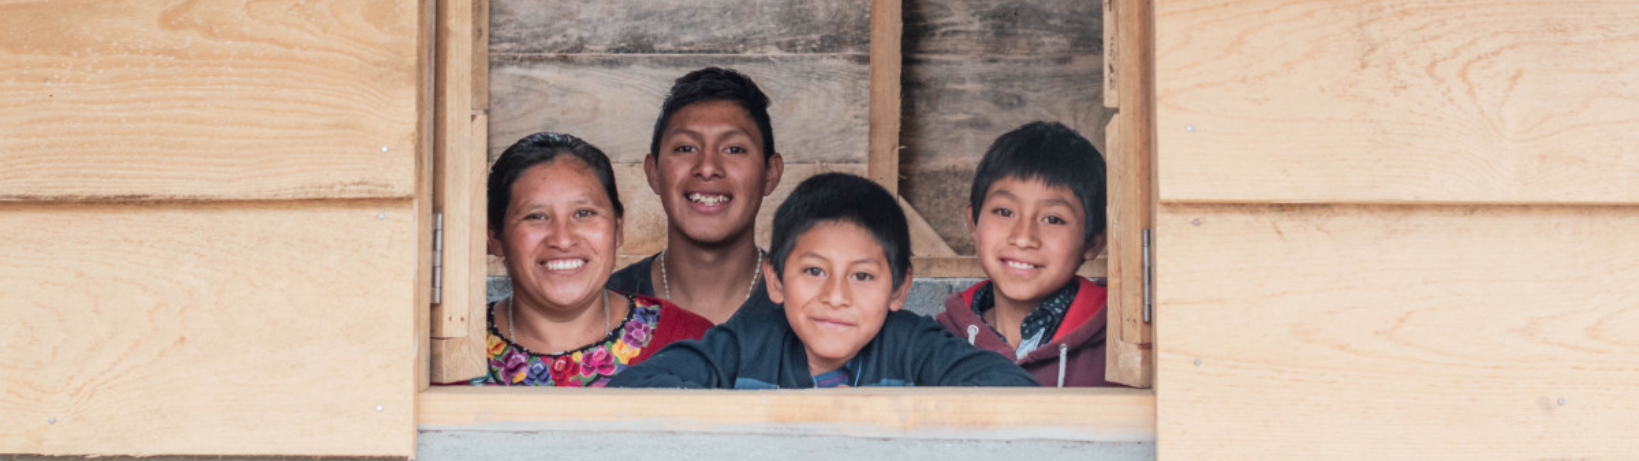 Familie in Guatemala kijkt door het raam van hun huis